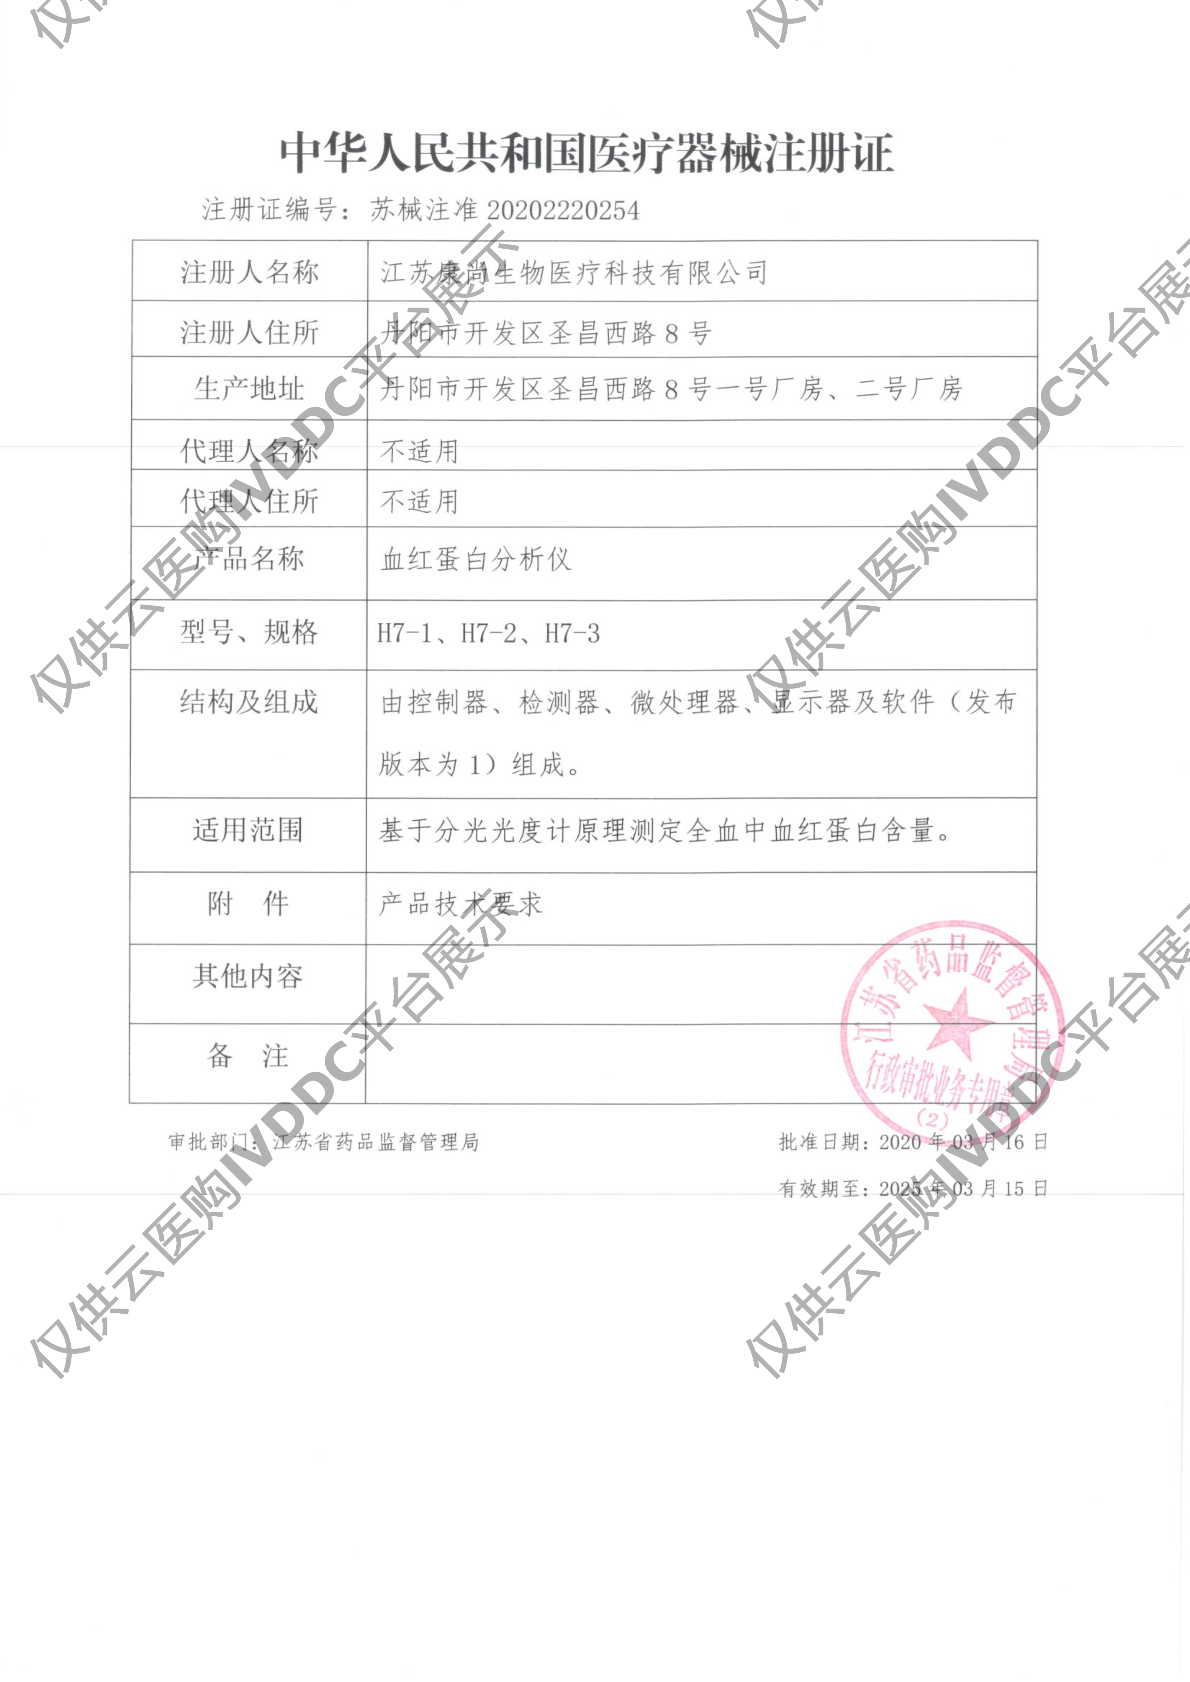 【康尚】血红蛋白分析仪 H7注册证